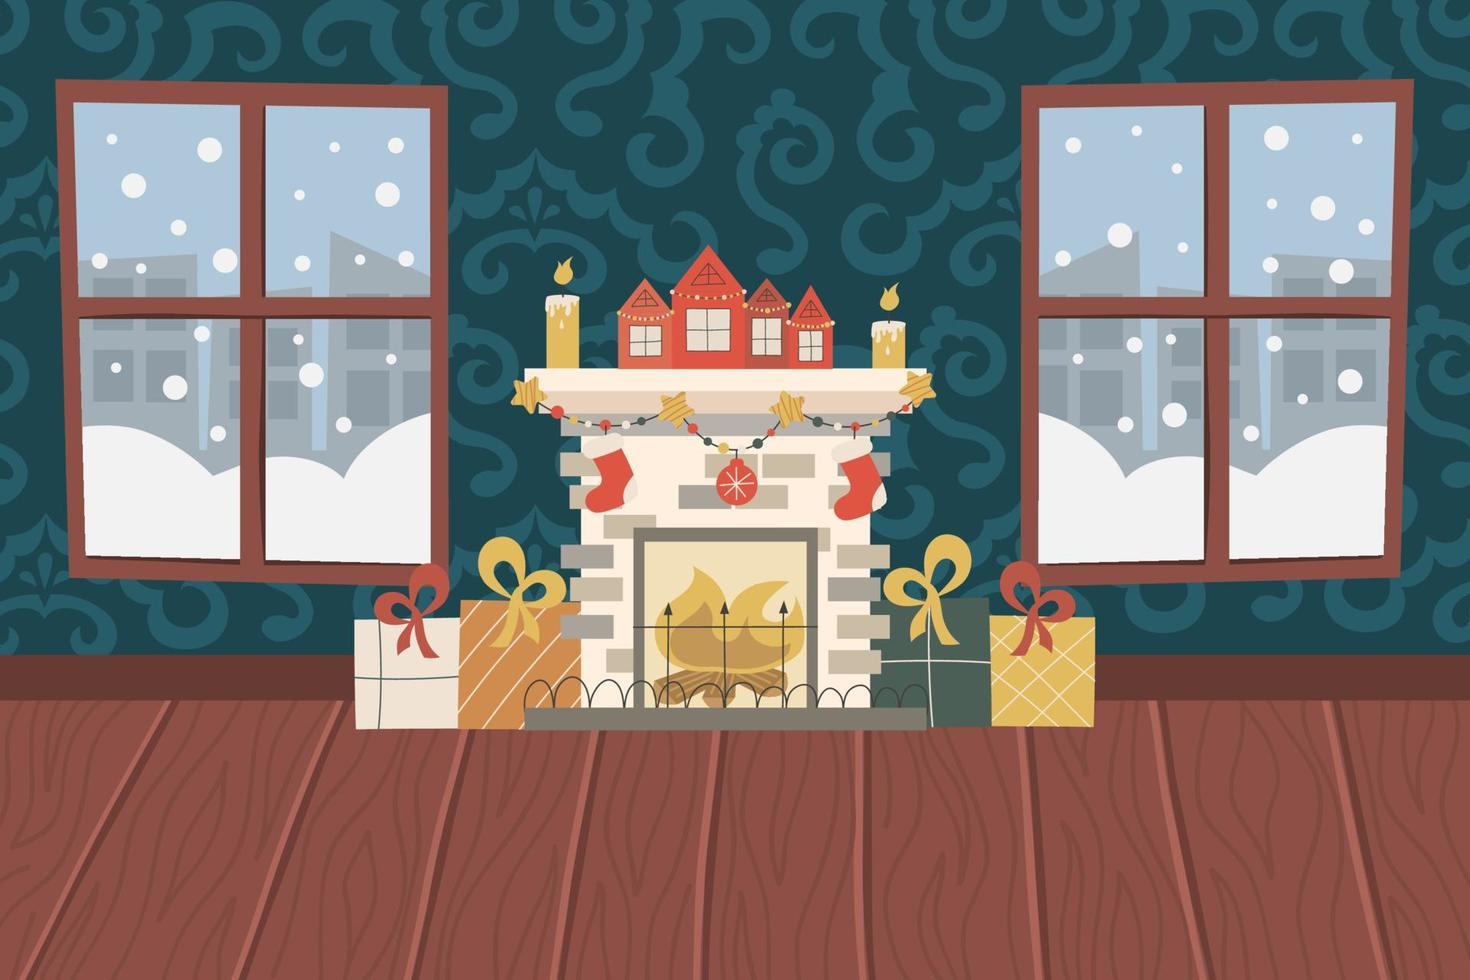 salon de noël avec cheminée, parquet, papier peint à motifs et fenêtres enneigées. cheminée avec bougies, cadeaux et chaussettes, maisons avec guirlandes. illustration vectorielle pour un intérieur festif. vecteur